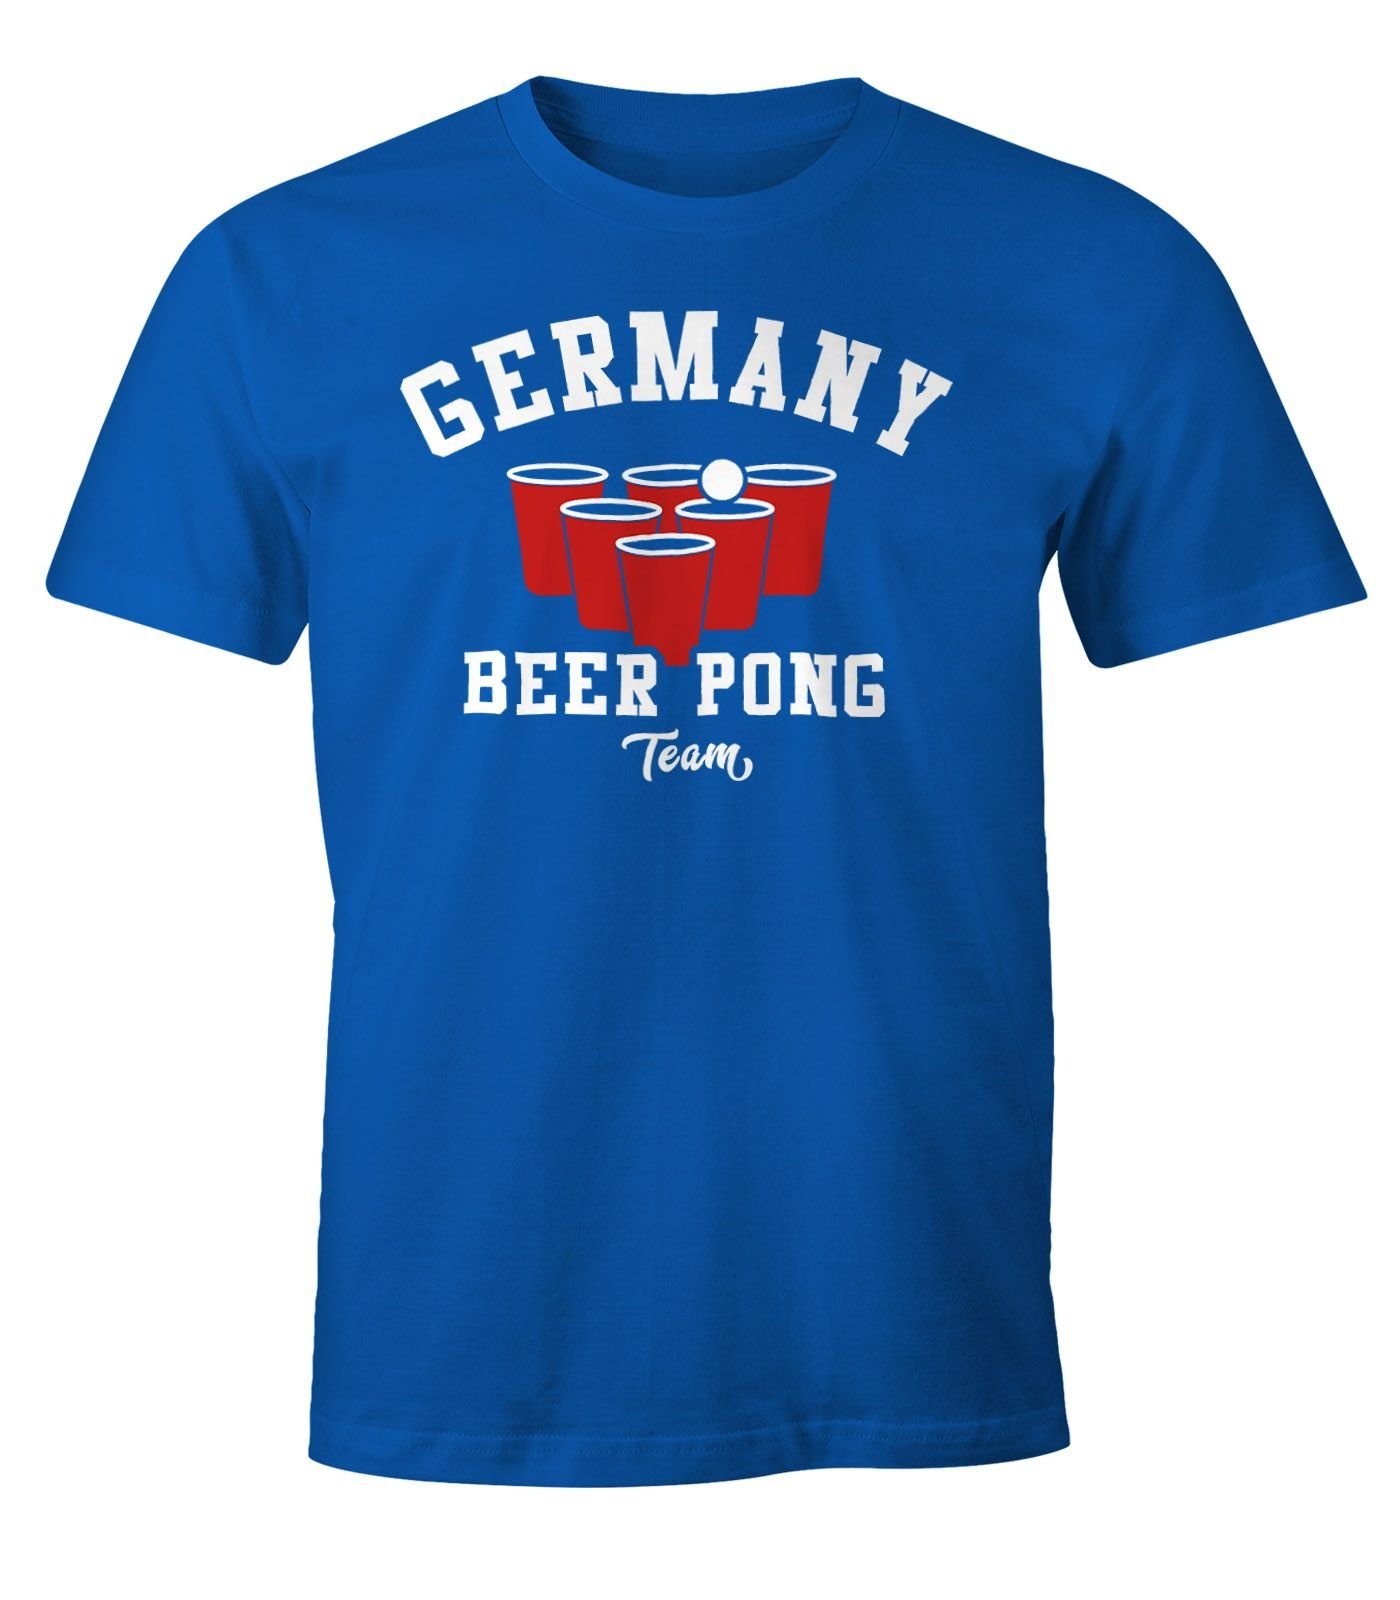 MoonWorks Print-Shirt Herren T-Shirt Germany Beer Pong Team Bier Fun-Shirt Moonworks® mit Print blau